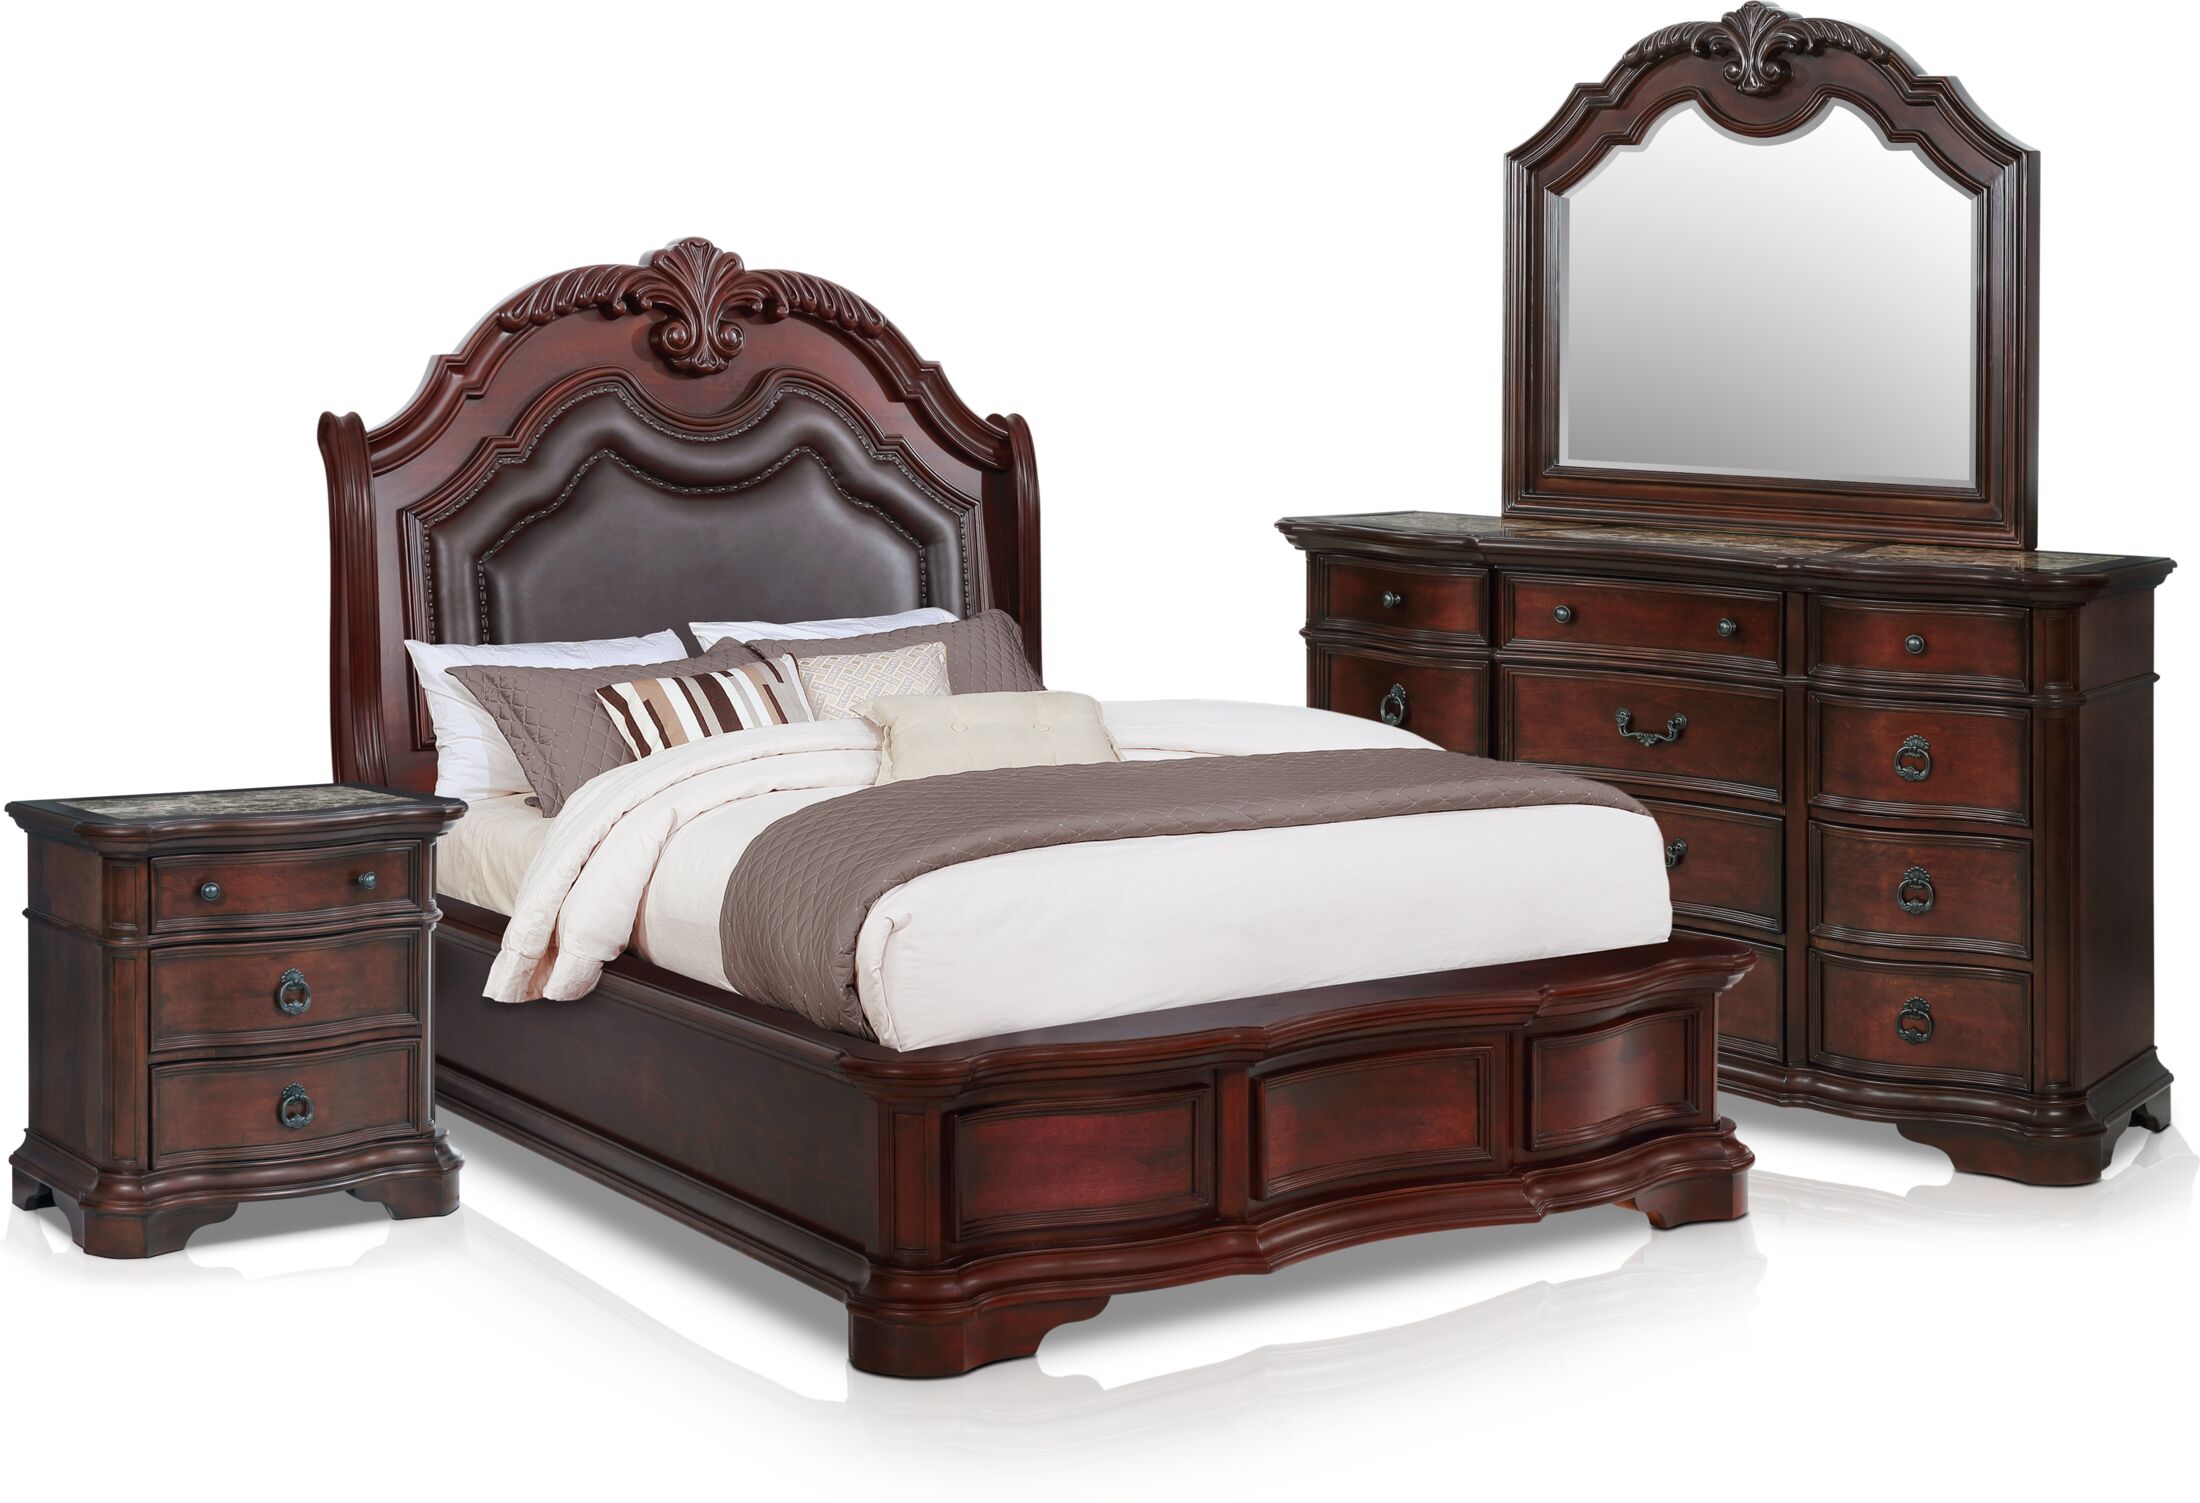 gramercy park bedroom furniture